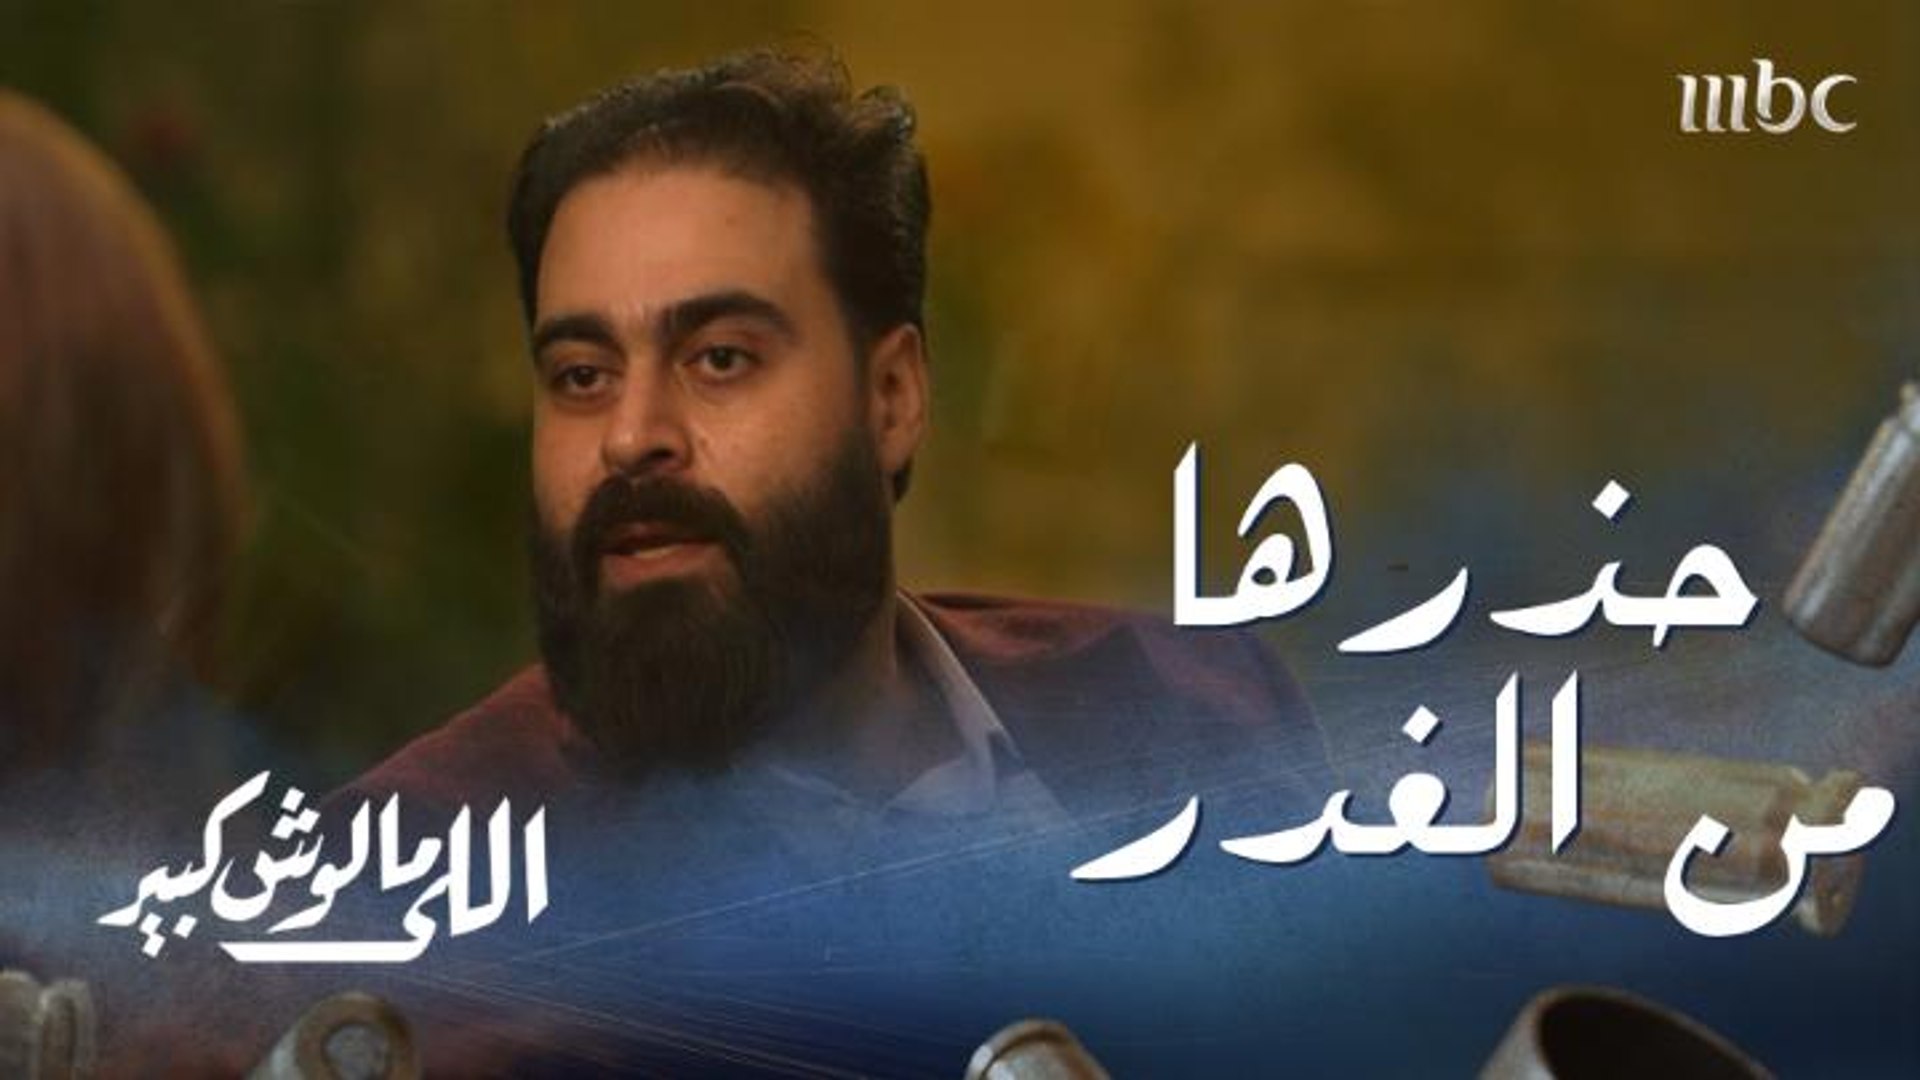 اللي مالوش كبير الحلقة 26: عماد يحذر نادين من الغدر - فيديو Dailymotion